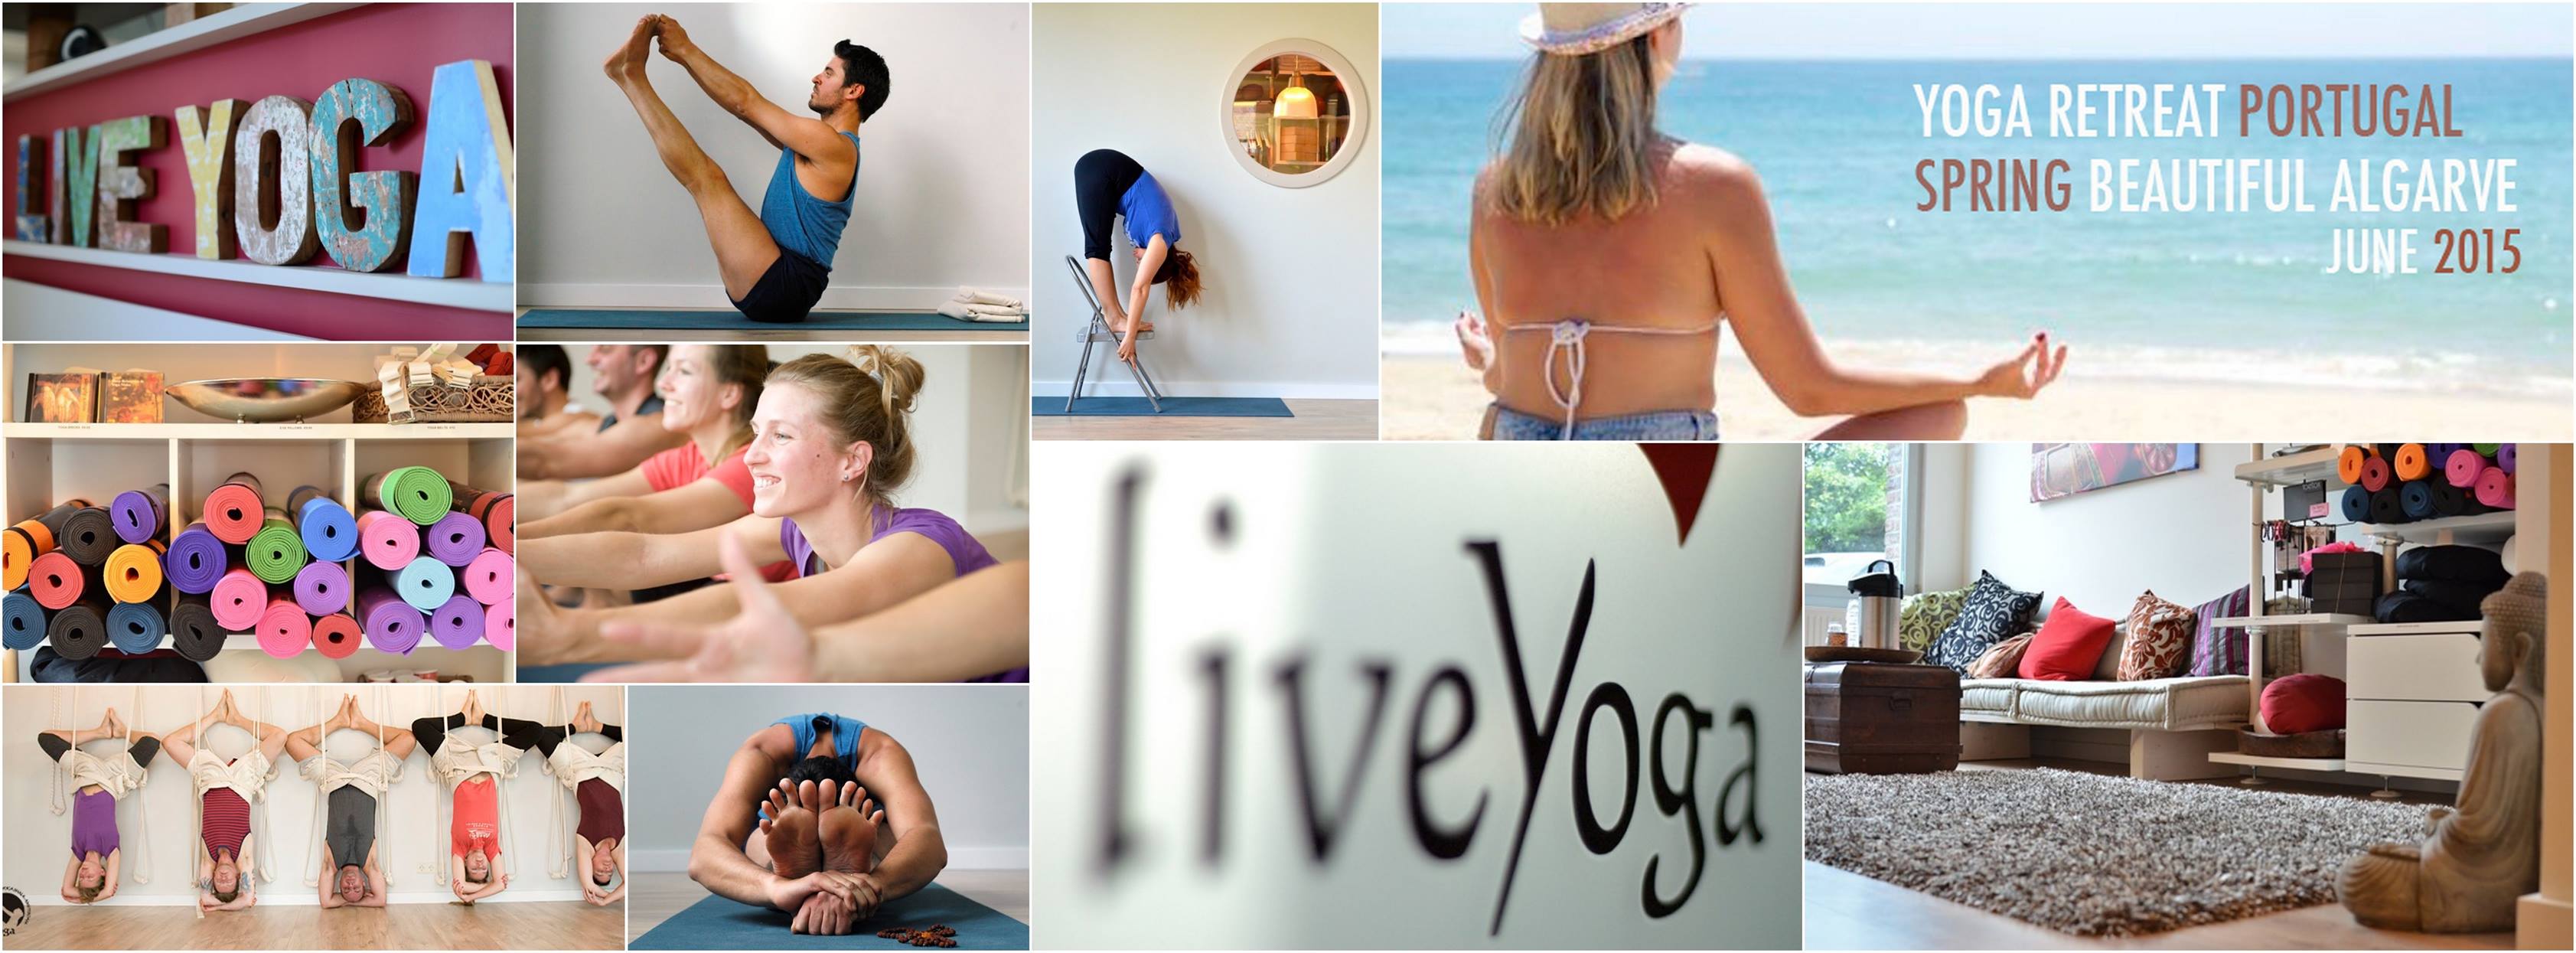 liveYoga - Iyengar Yoga Shala Image